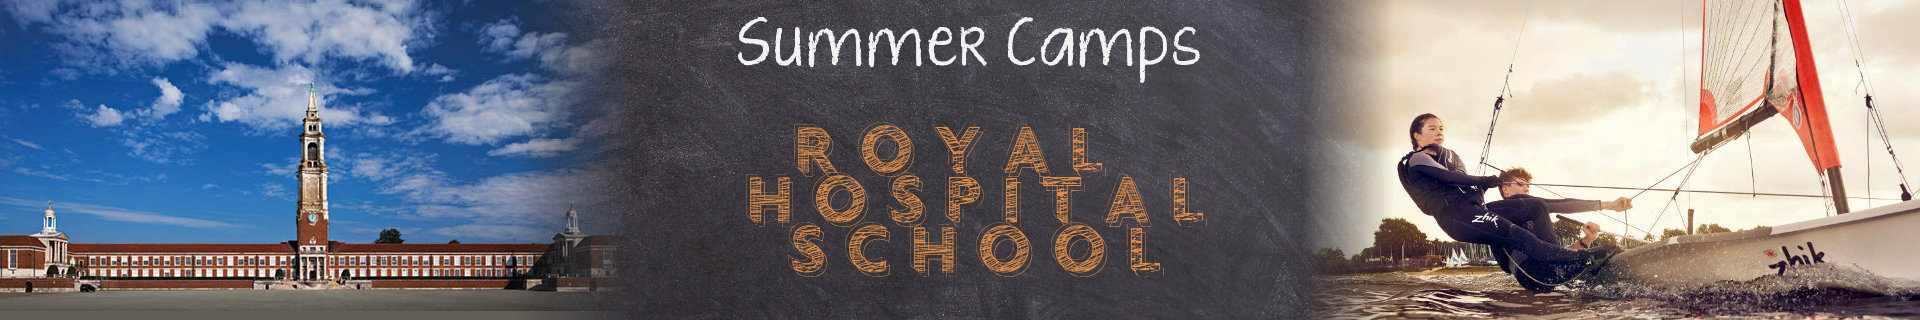 royal-hospital-school-header